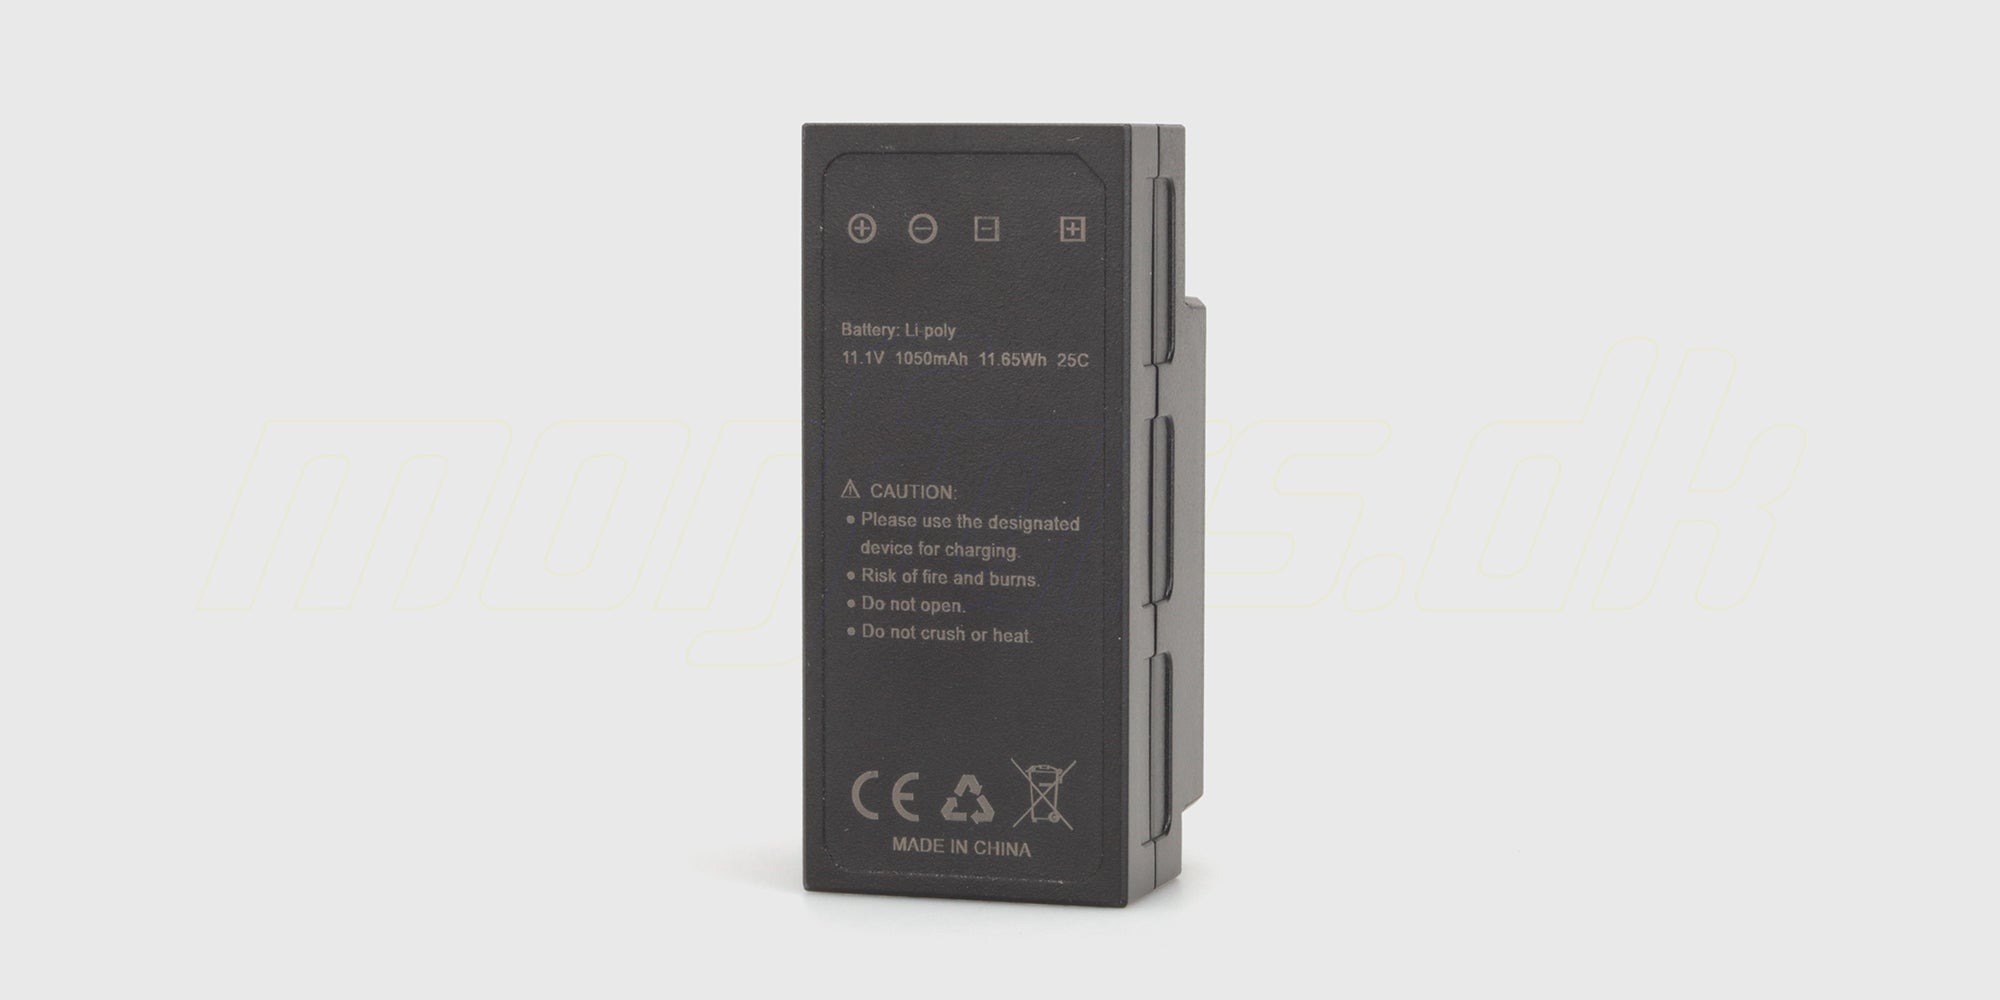 HyperGo 3S battery (11.1V 1050mAh)